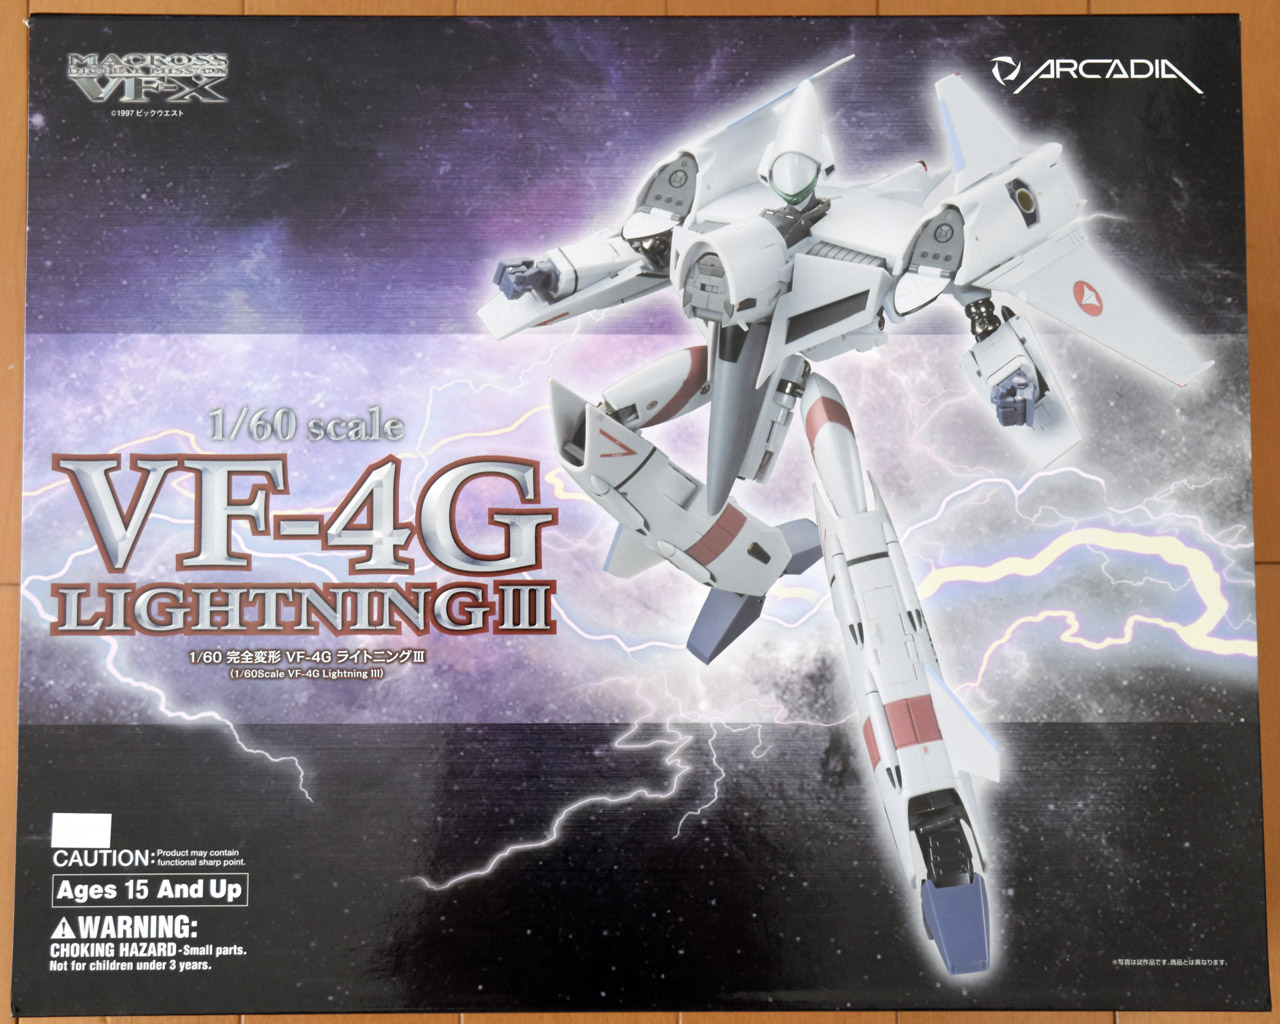 1/60 VF-4G Lightning III Transformable (Macross Digital Mission VF